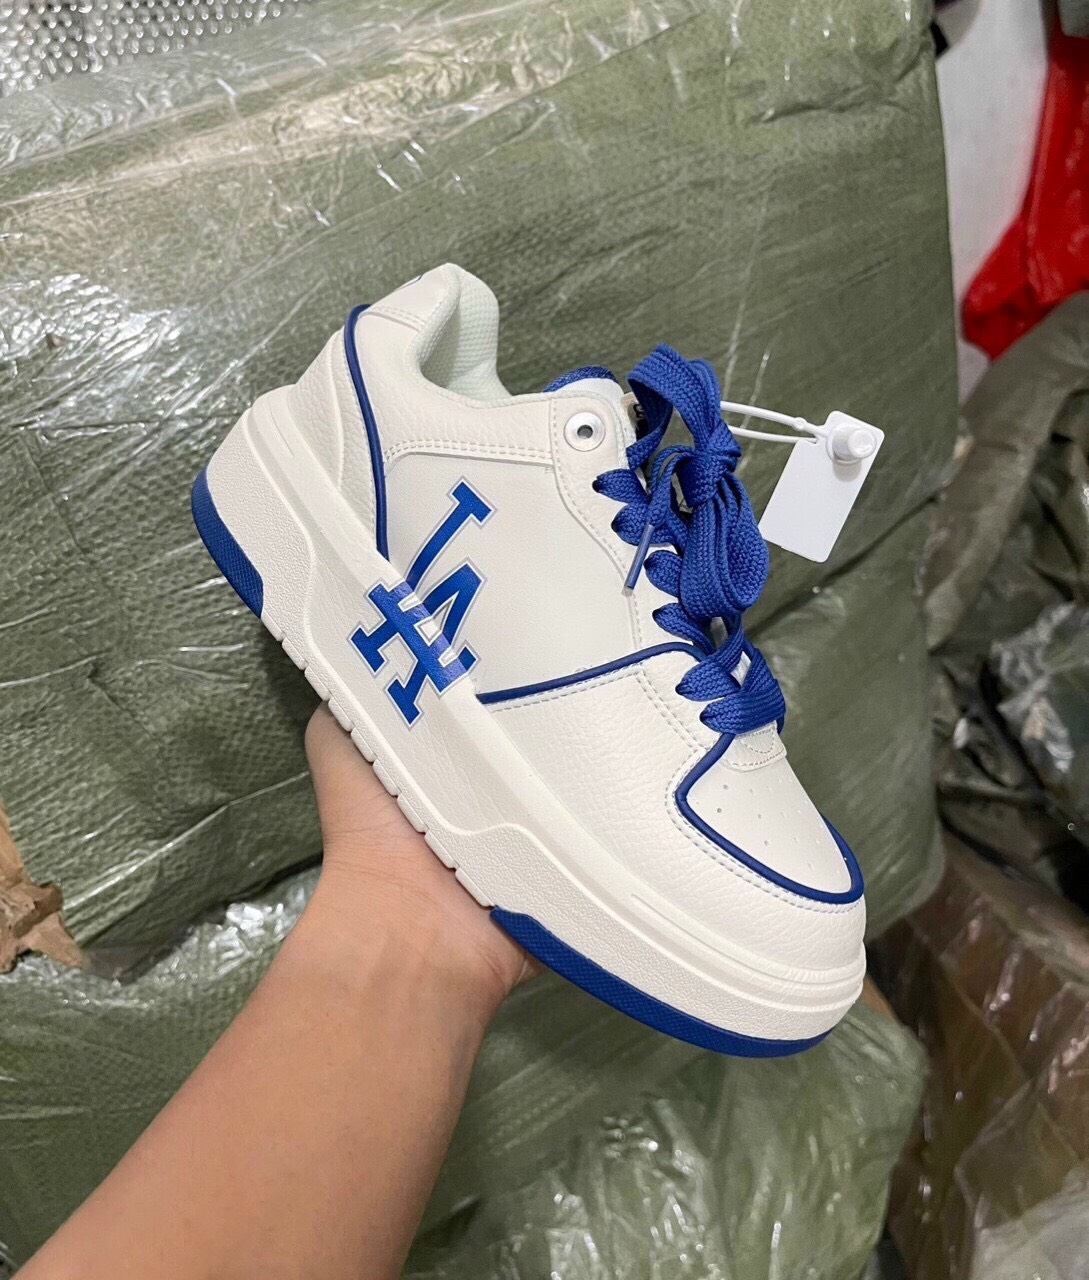 Giày MLB chunky liner màu trắng xanh lá chữ NY thể thao nam nữ  Shop Nhung